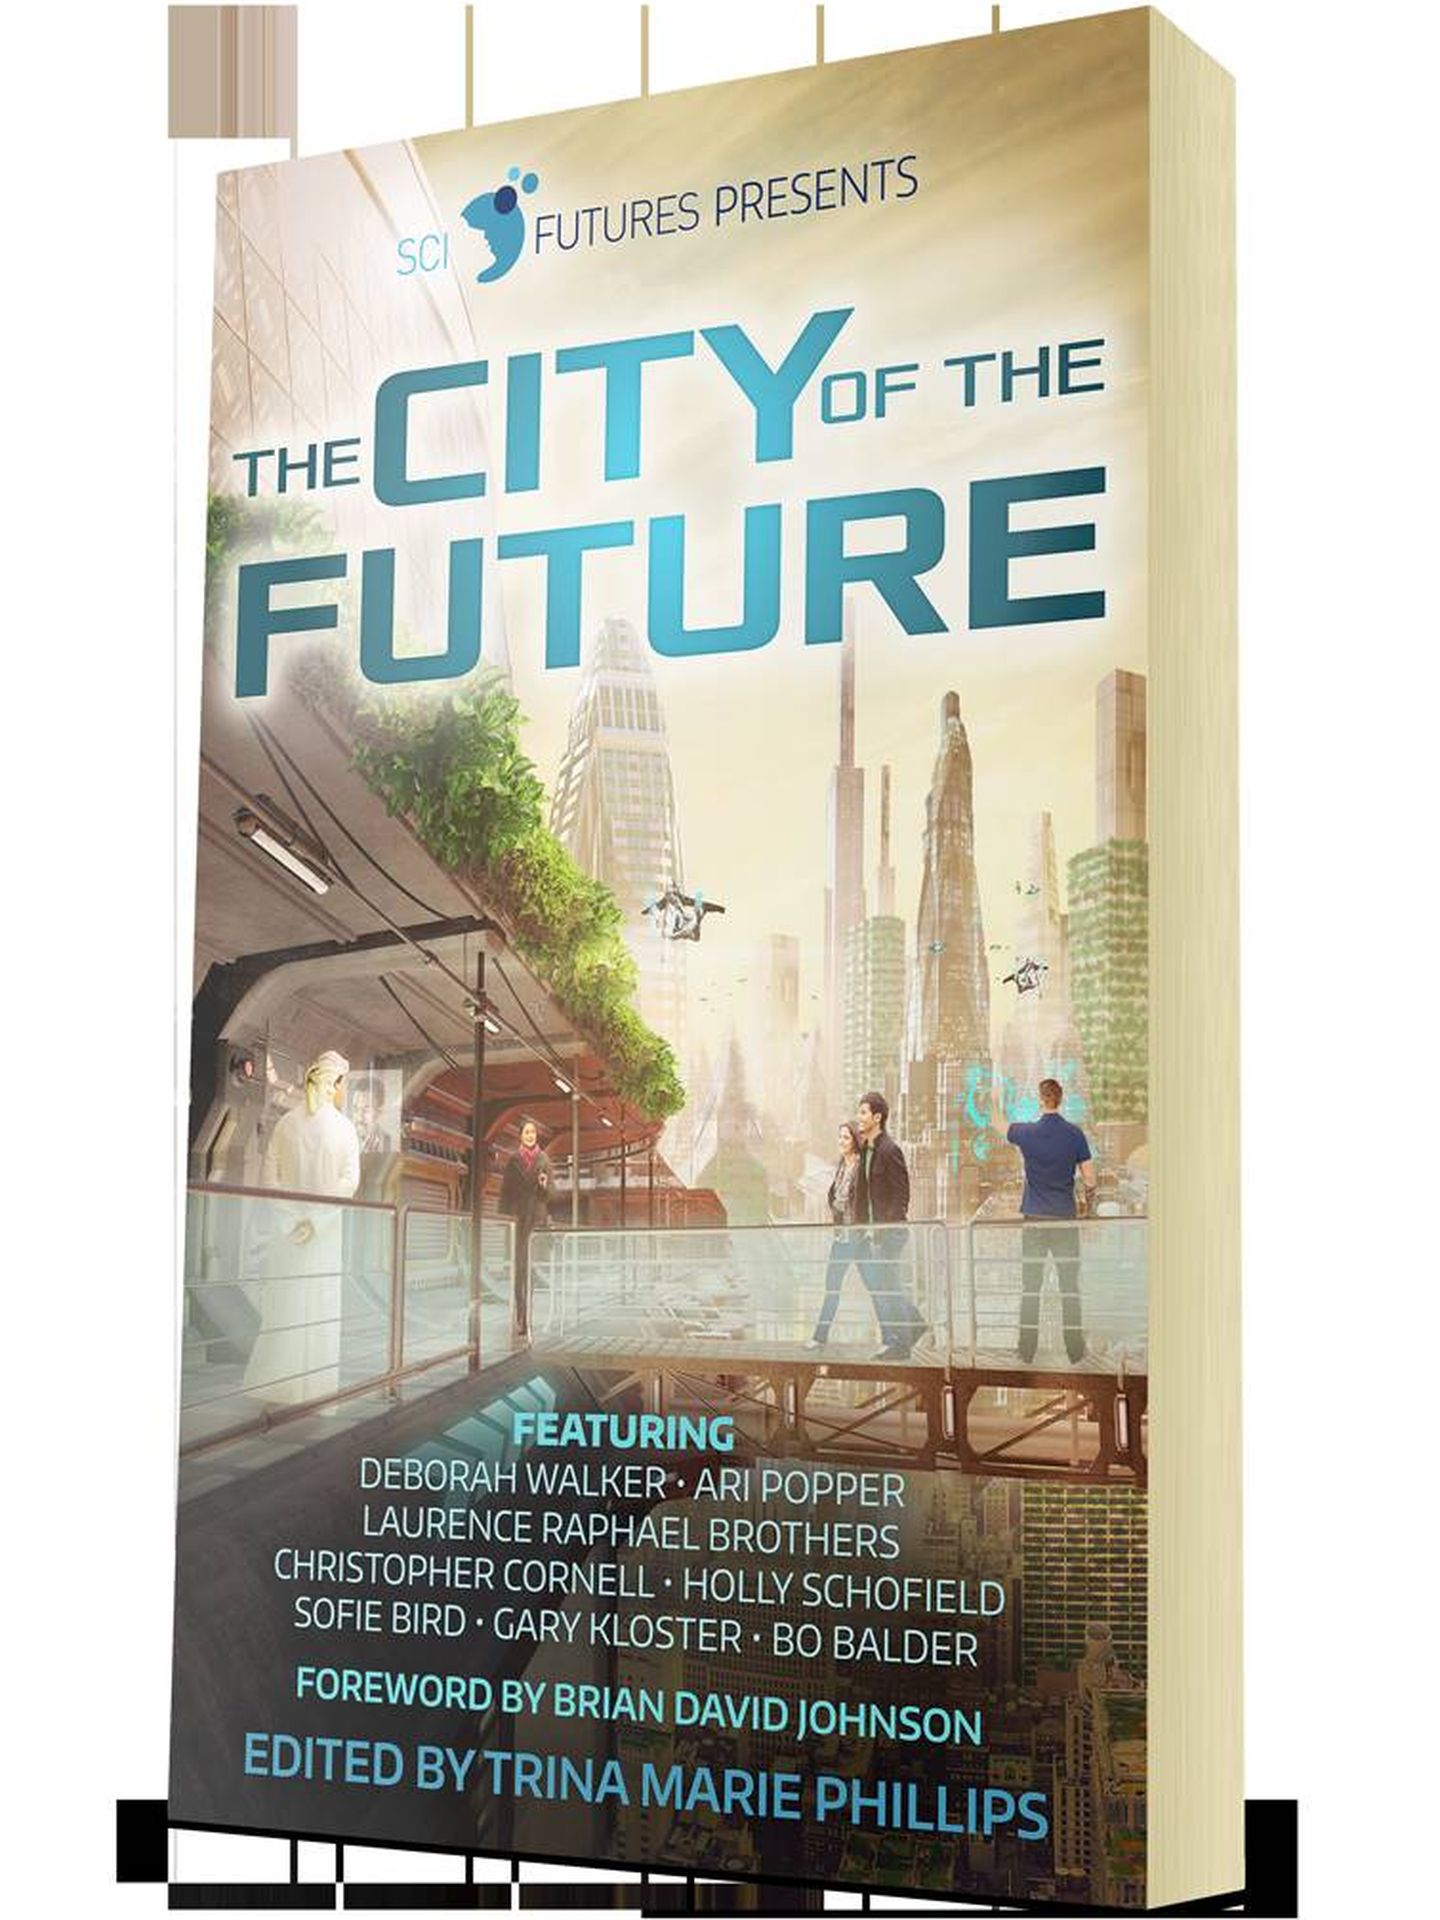 Portada de 'La ciudad del futuro', uno de los trabajos de SciFutures (Ari Popper)